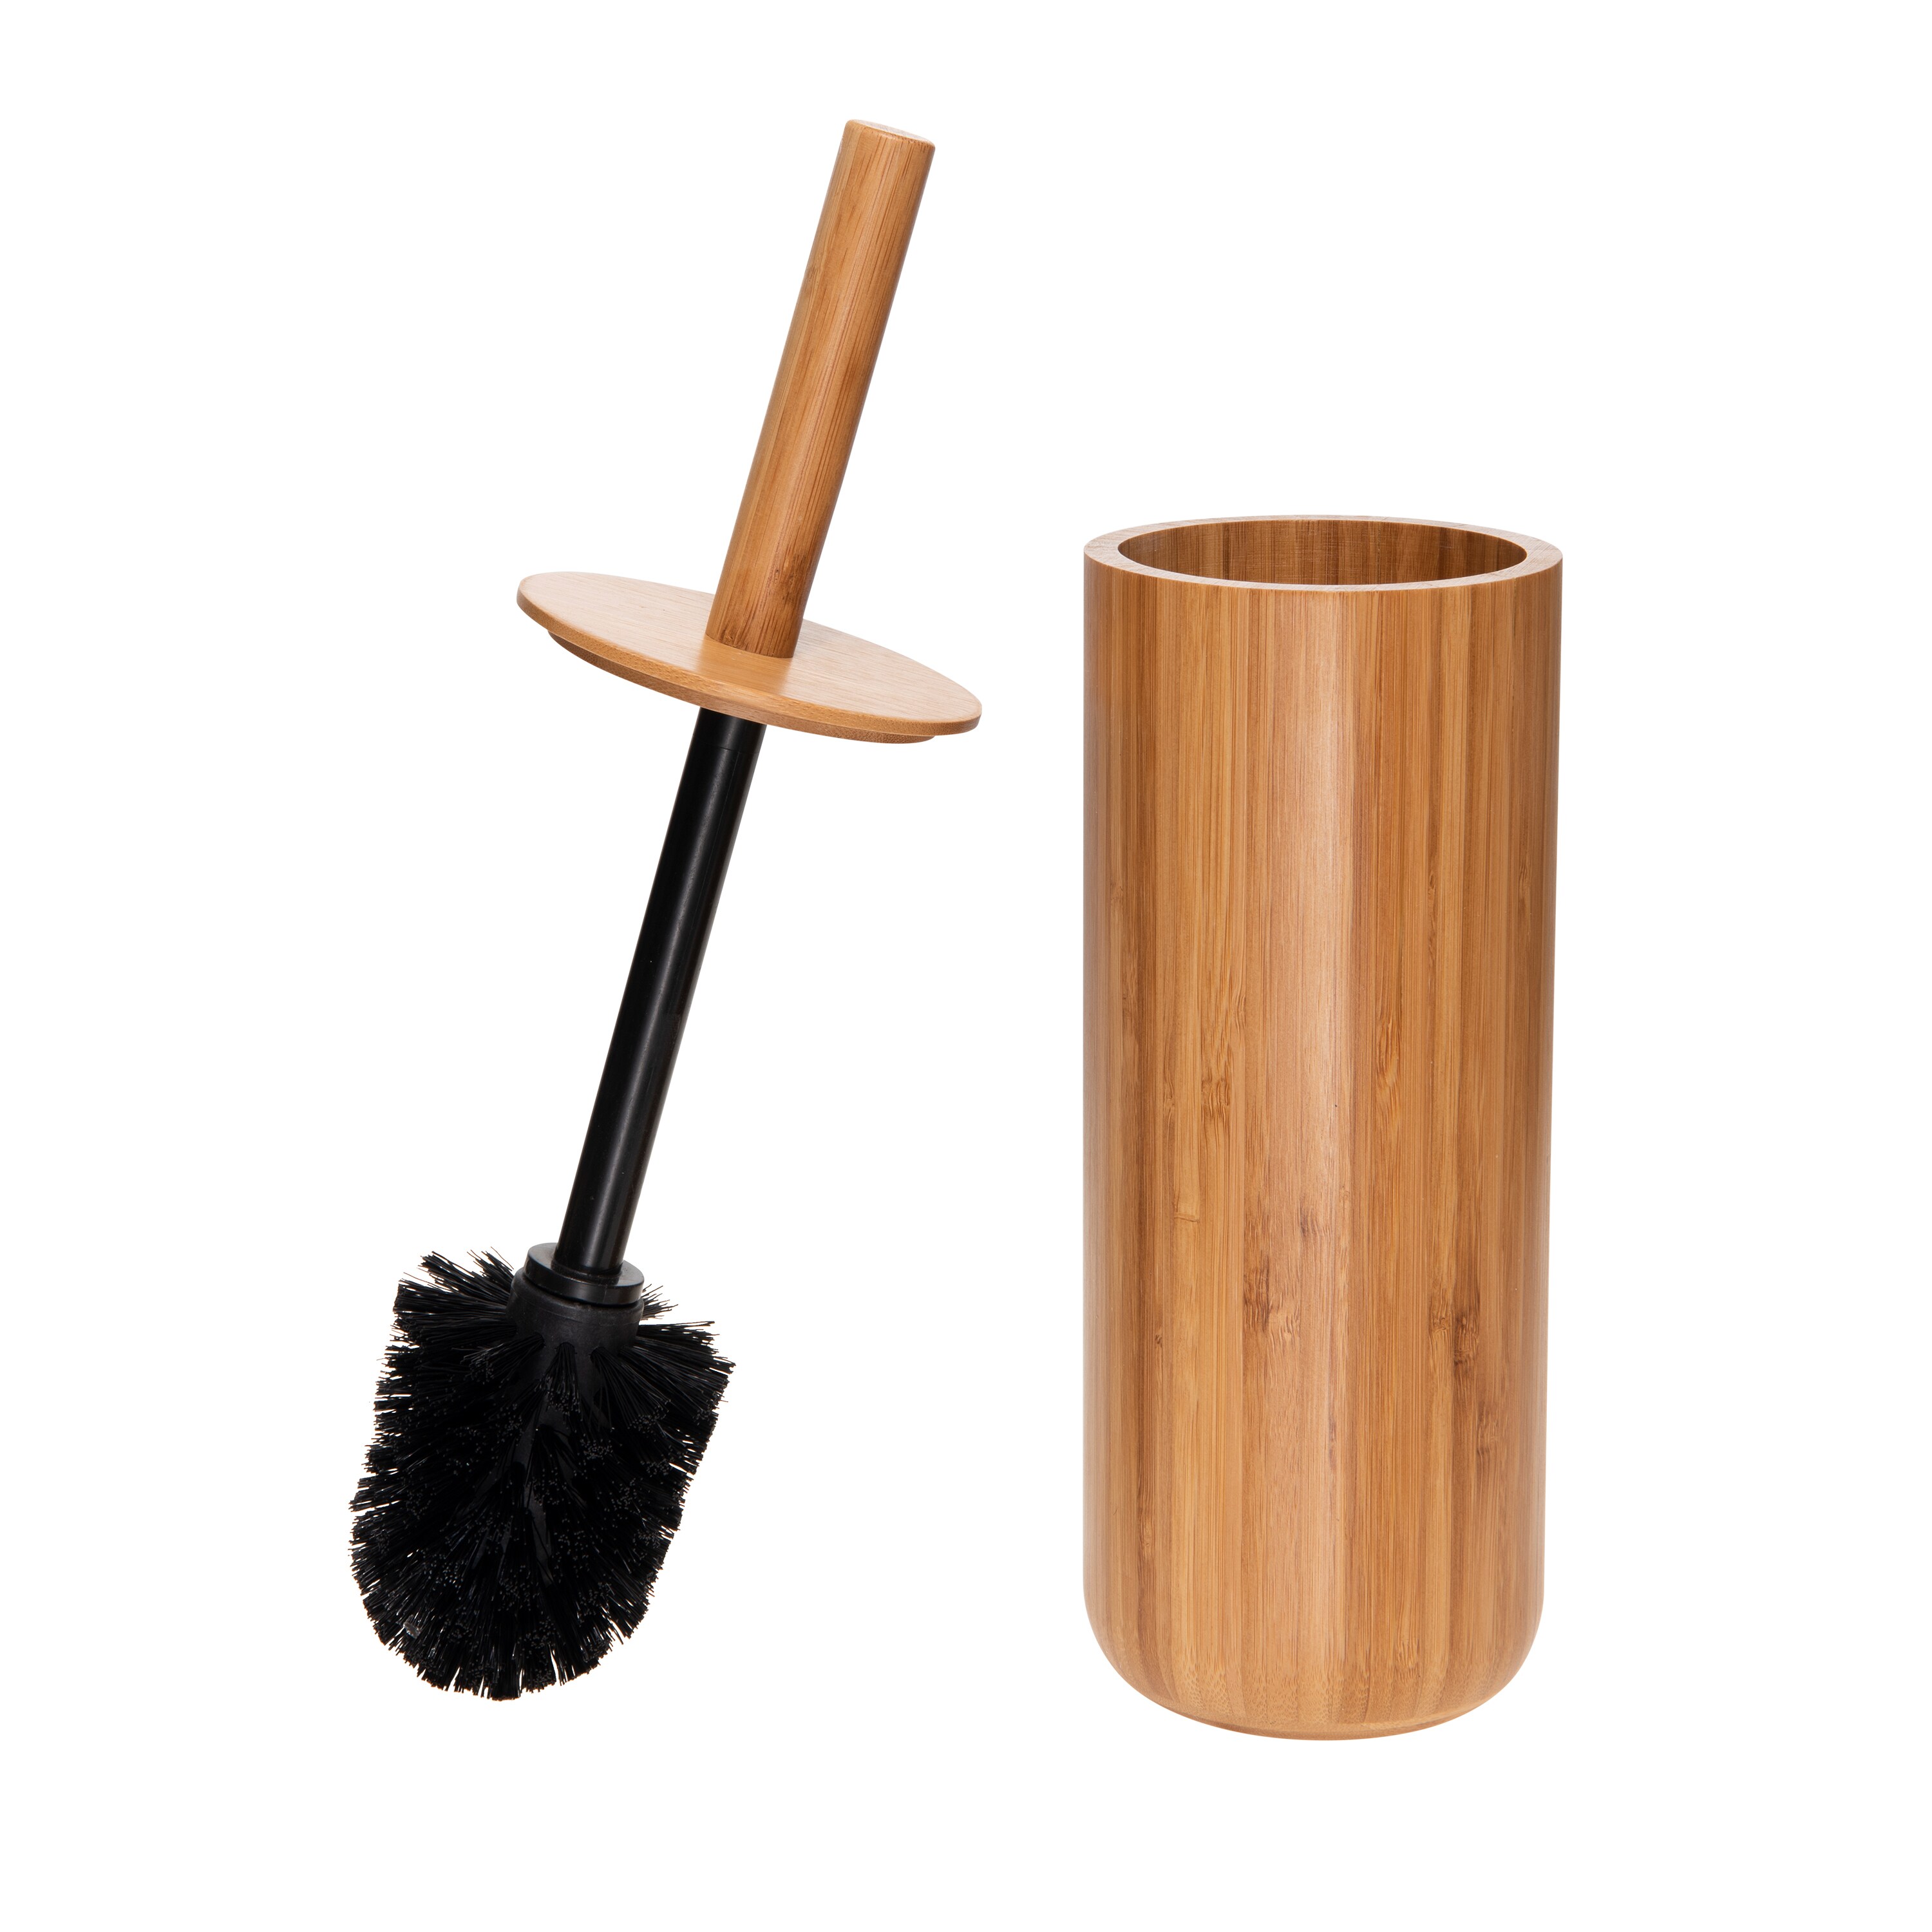 Enamel Toilet Brush Holder and Wooden Brush